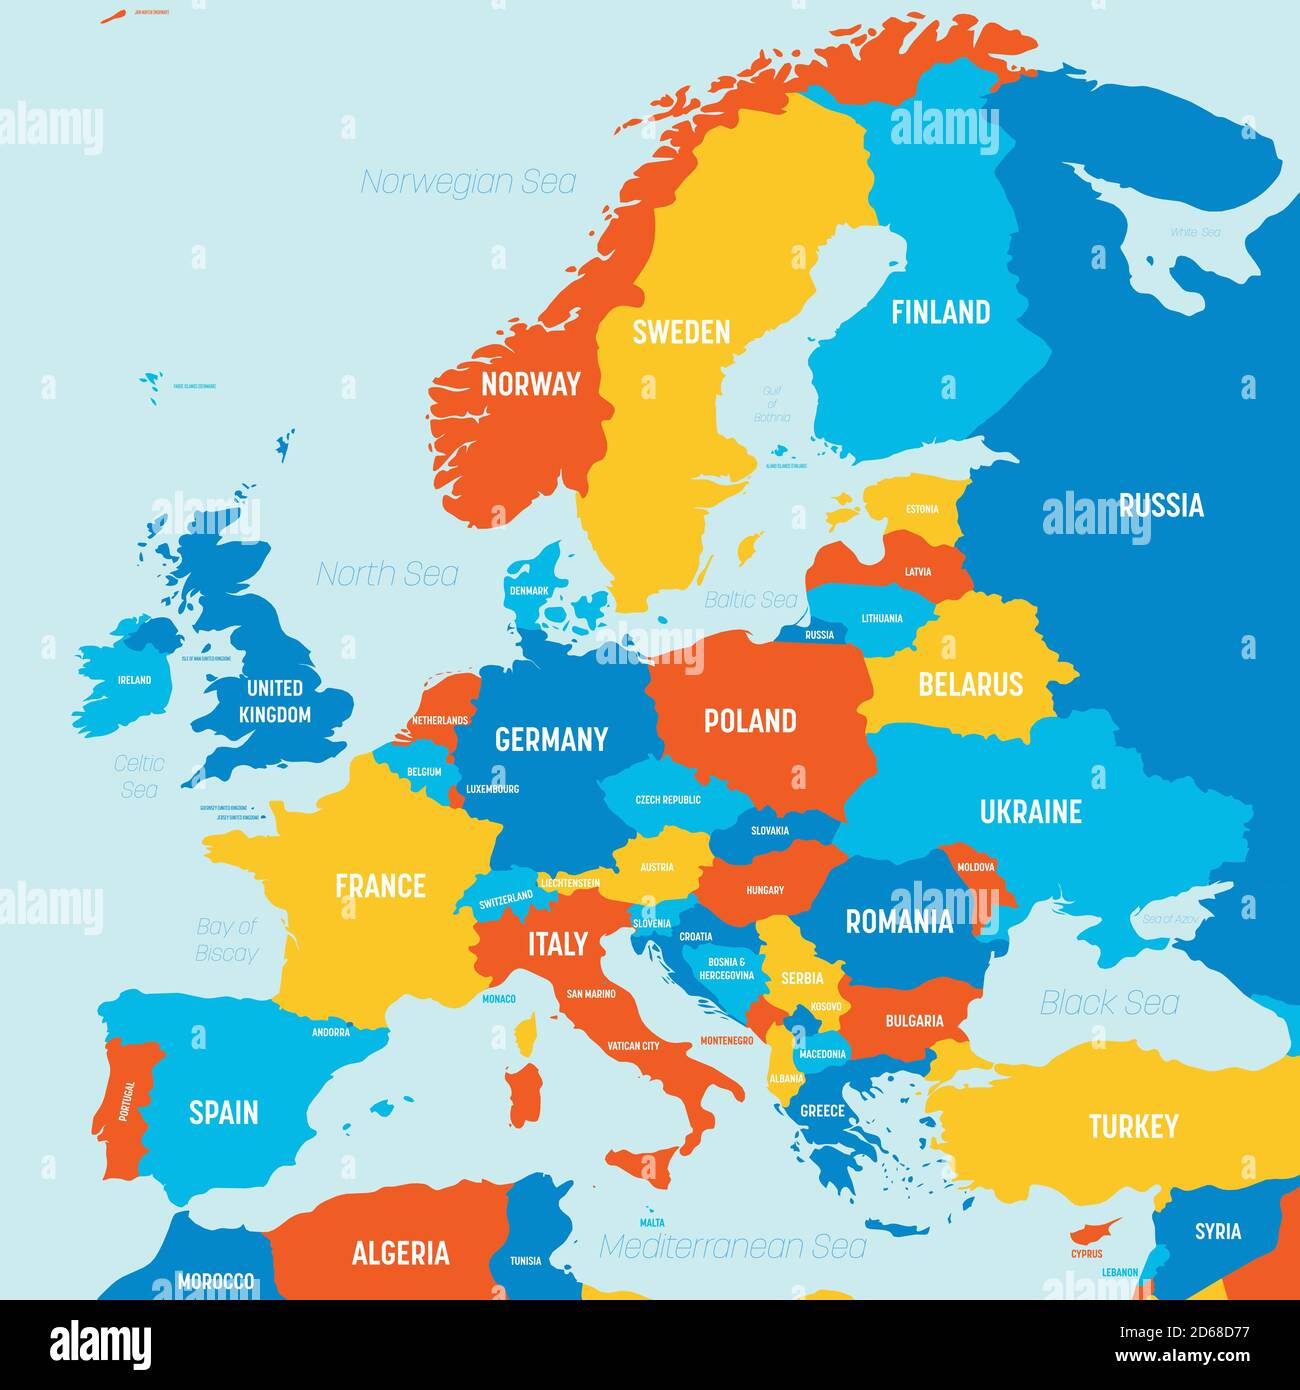 Cartina dell'Europa - 4 colori brillanti. Mappa politica dettagliata del  continente europeo con etichettatura dei nomi di paesi, oceani e mari  Immagine e Vettoriale - Alamy